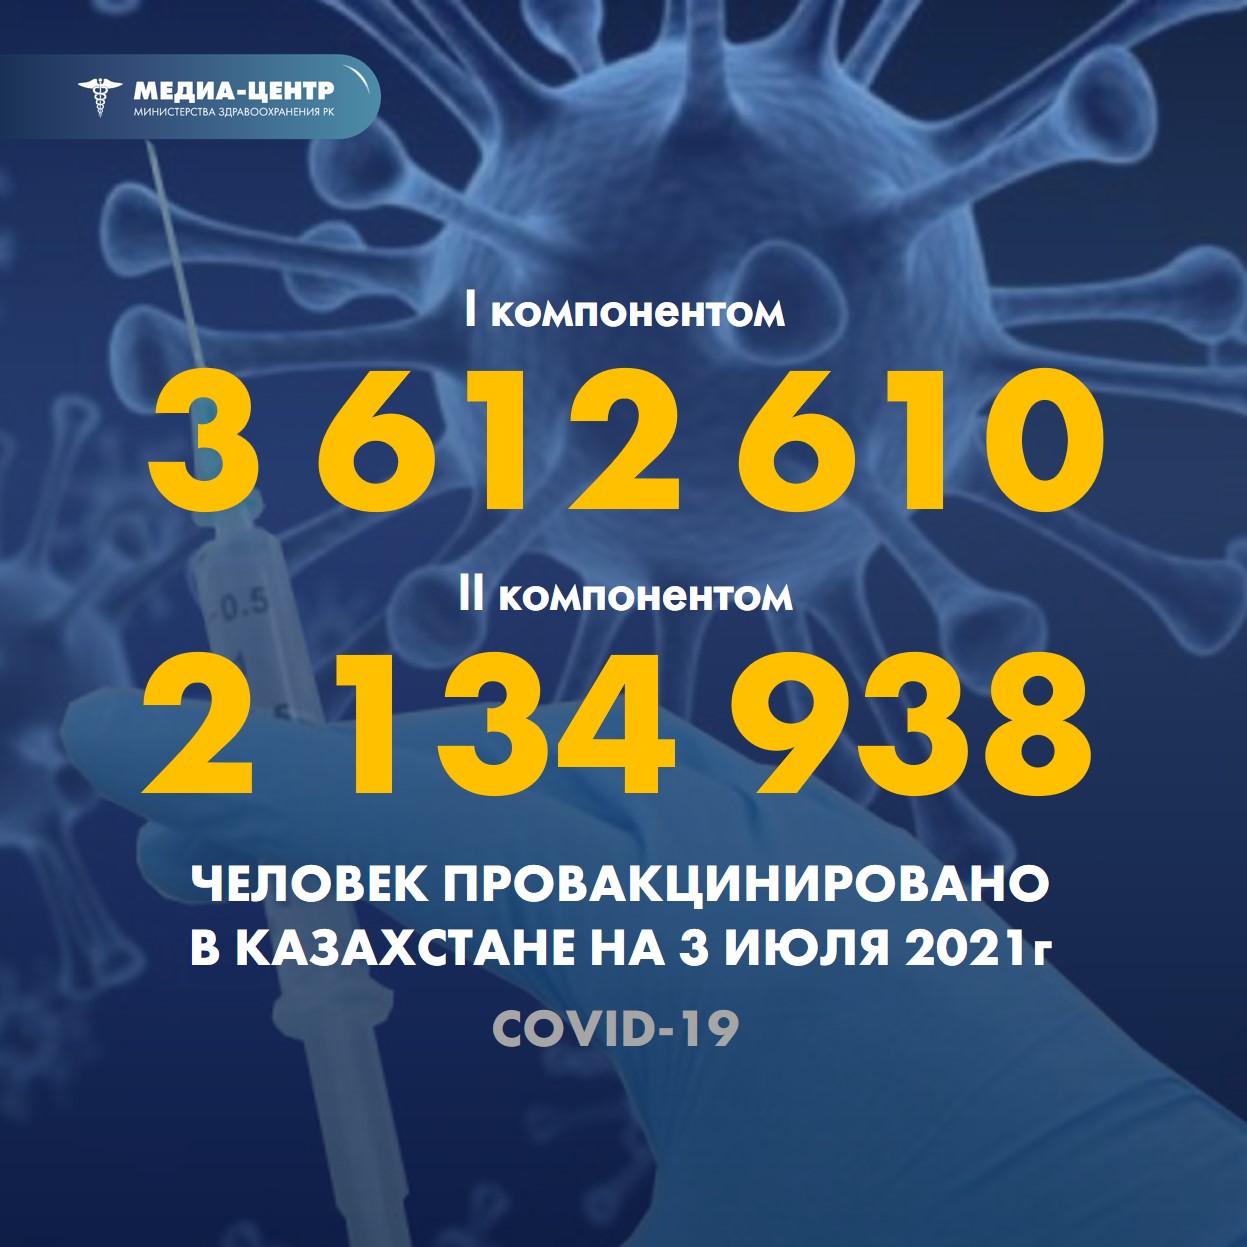 Информация о проведении вакцинации населения против КВИ на 3.07.2021 г. в разрезе регионов